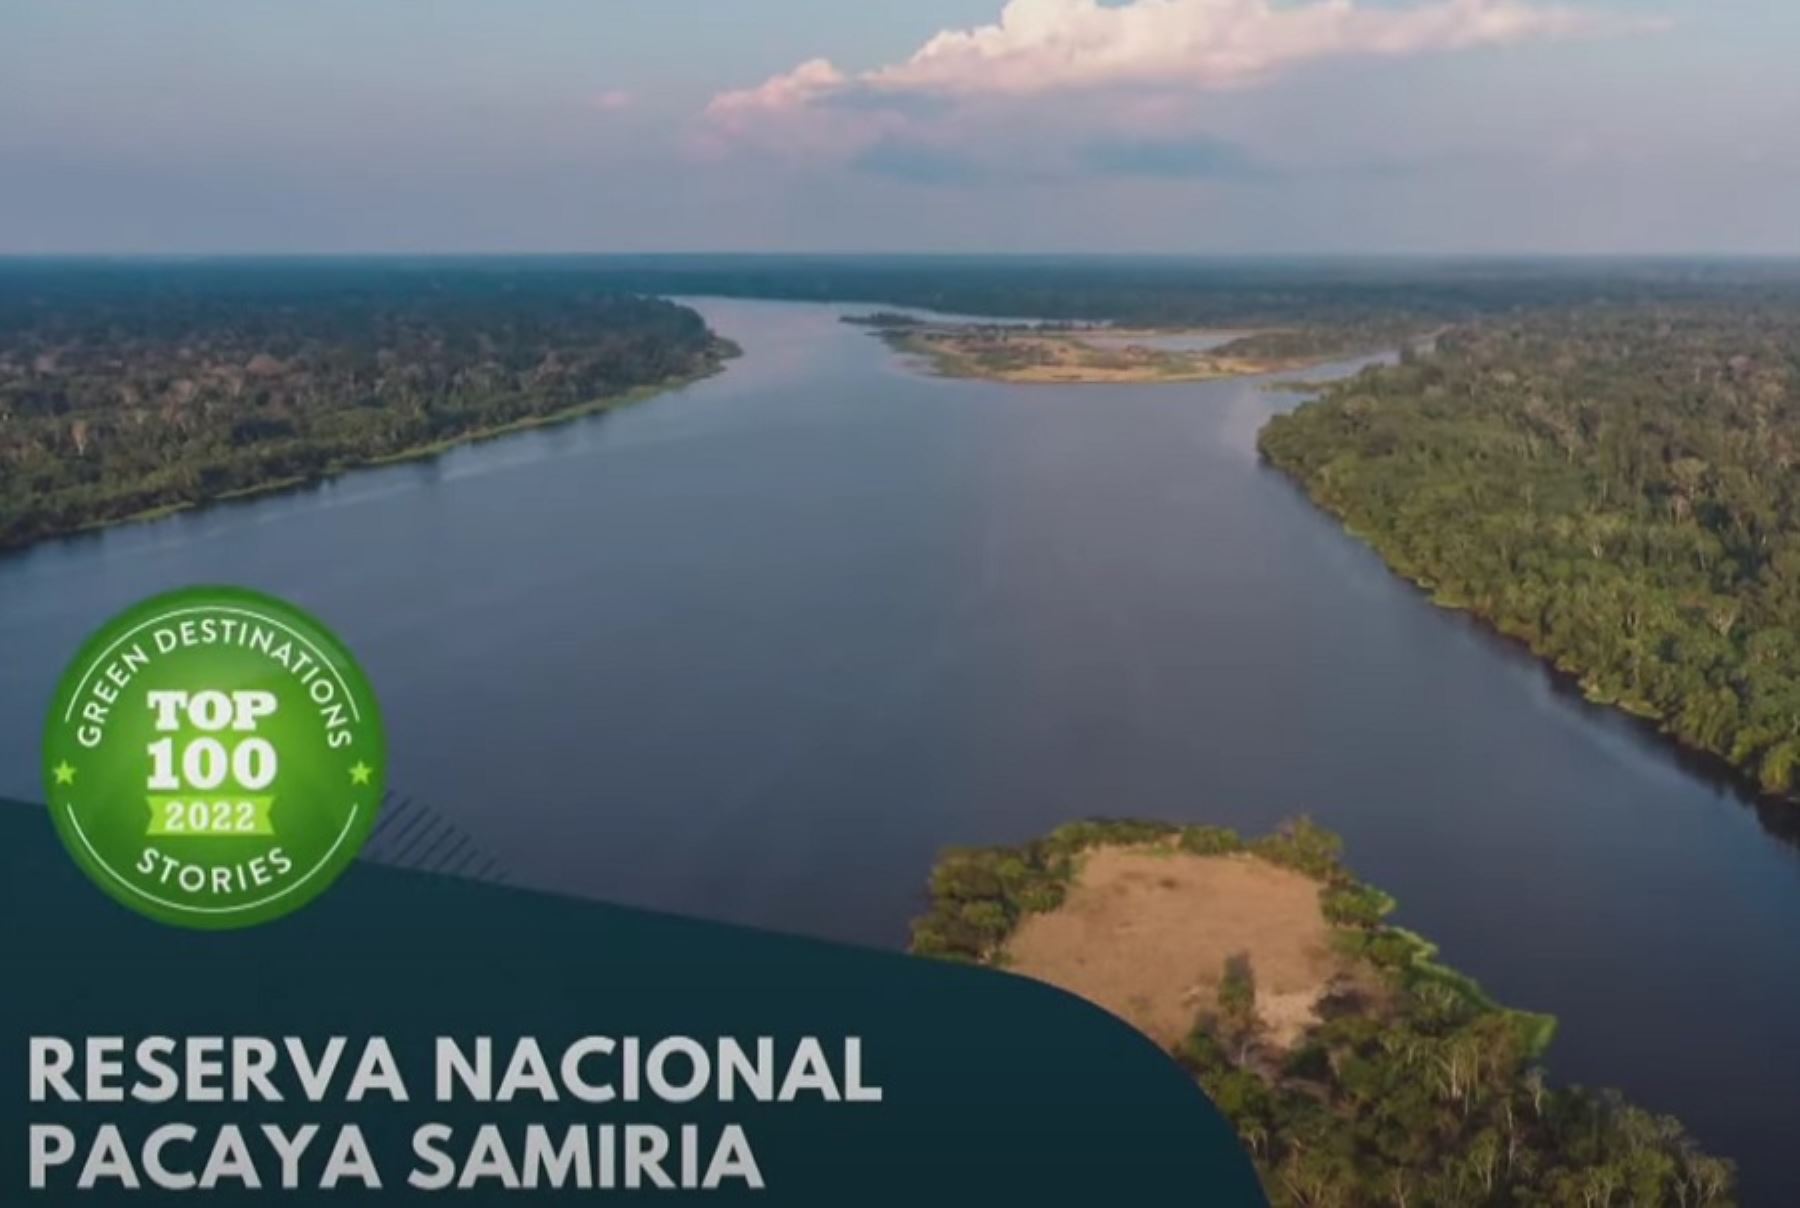 La Reserva Nacional Pacaya Samiria integra el Top 100 de Historias Sostenibles del mundo y este 2023 compite por el premio especial People